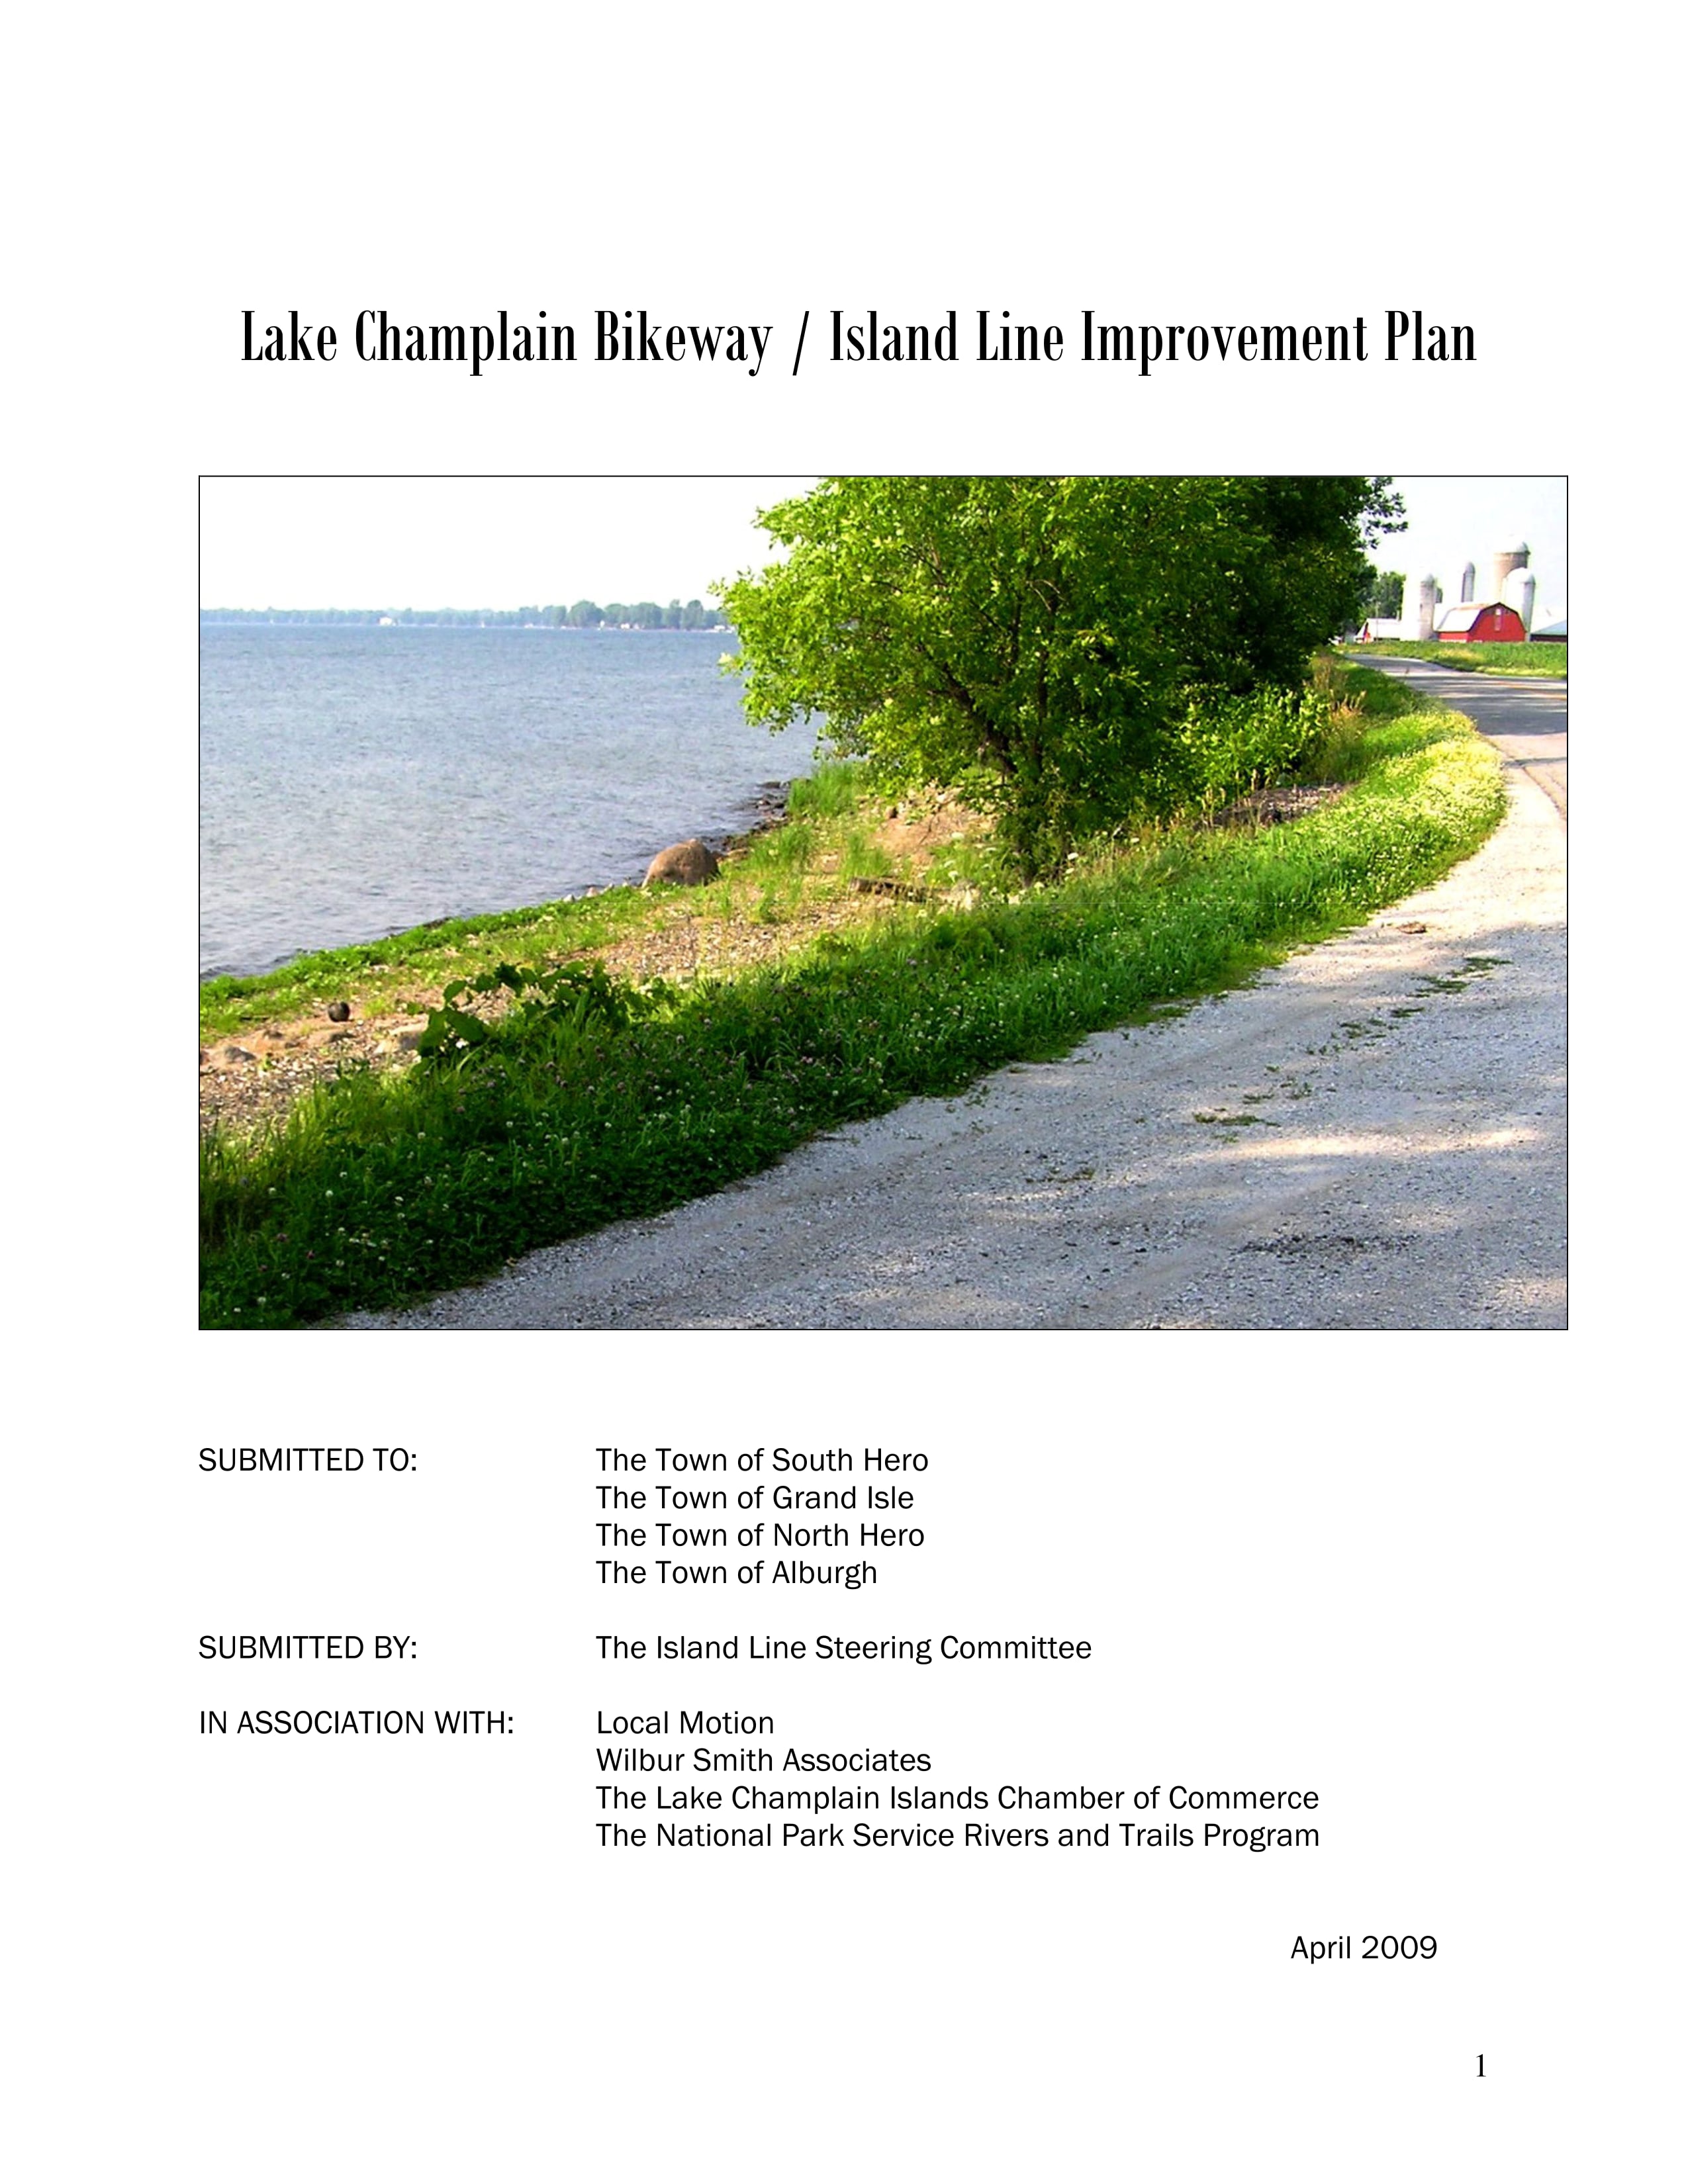 Lake Champlain Bikeway /Island Line Improvement Plan